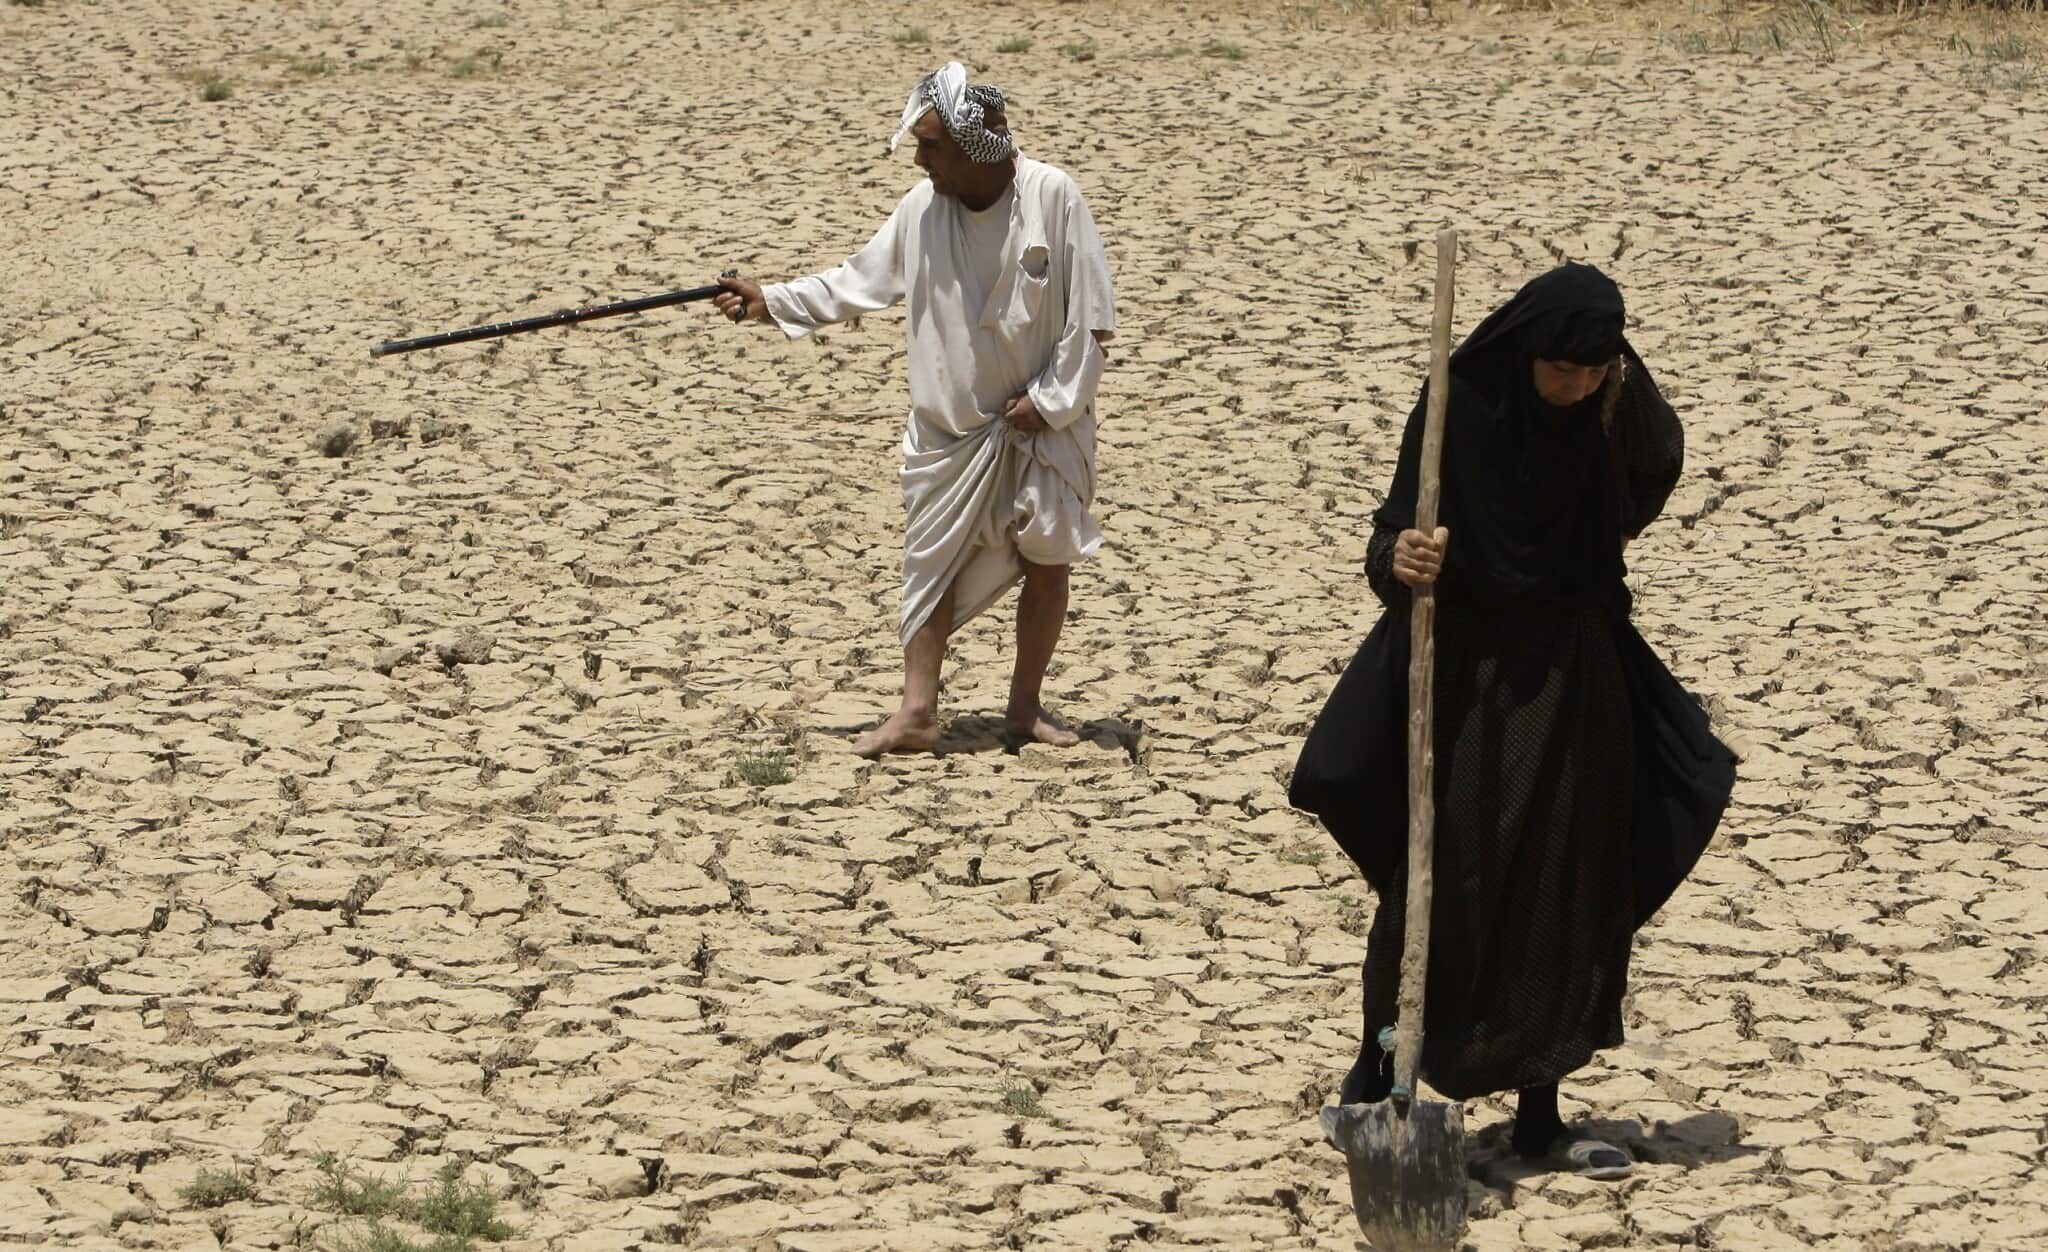 בעל ואישה בודקים את אדמותיהם הצחיחות בגלל הבצורת דרומית לבגדד, עיראק, ביולי 2009 (צילום: AP Photo/Hadi Mizban)